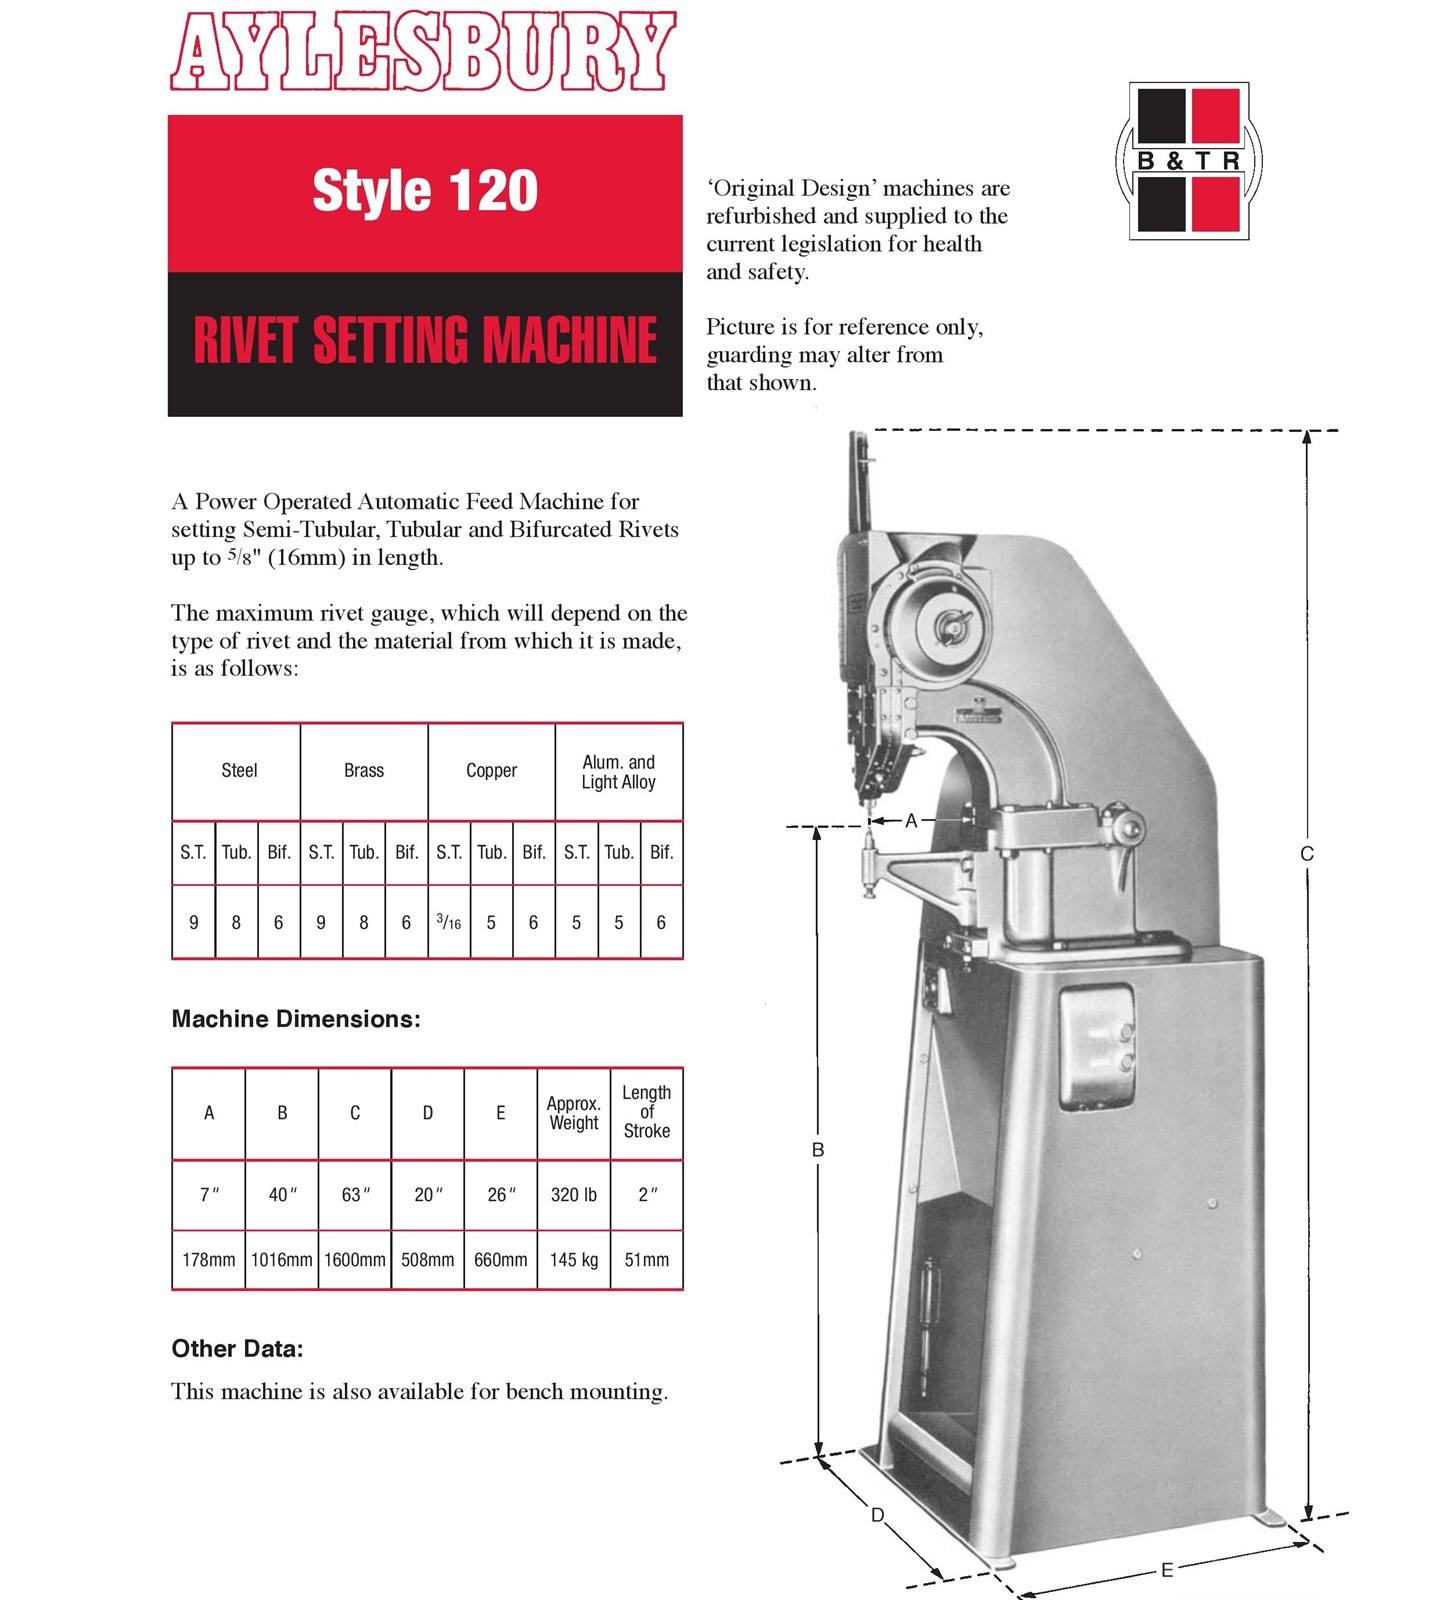 Aylesbury, Style 120 - rivet setting machine